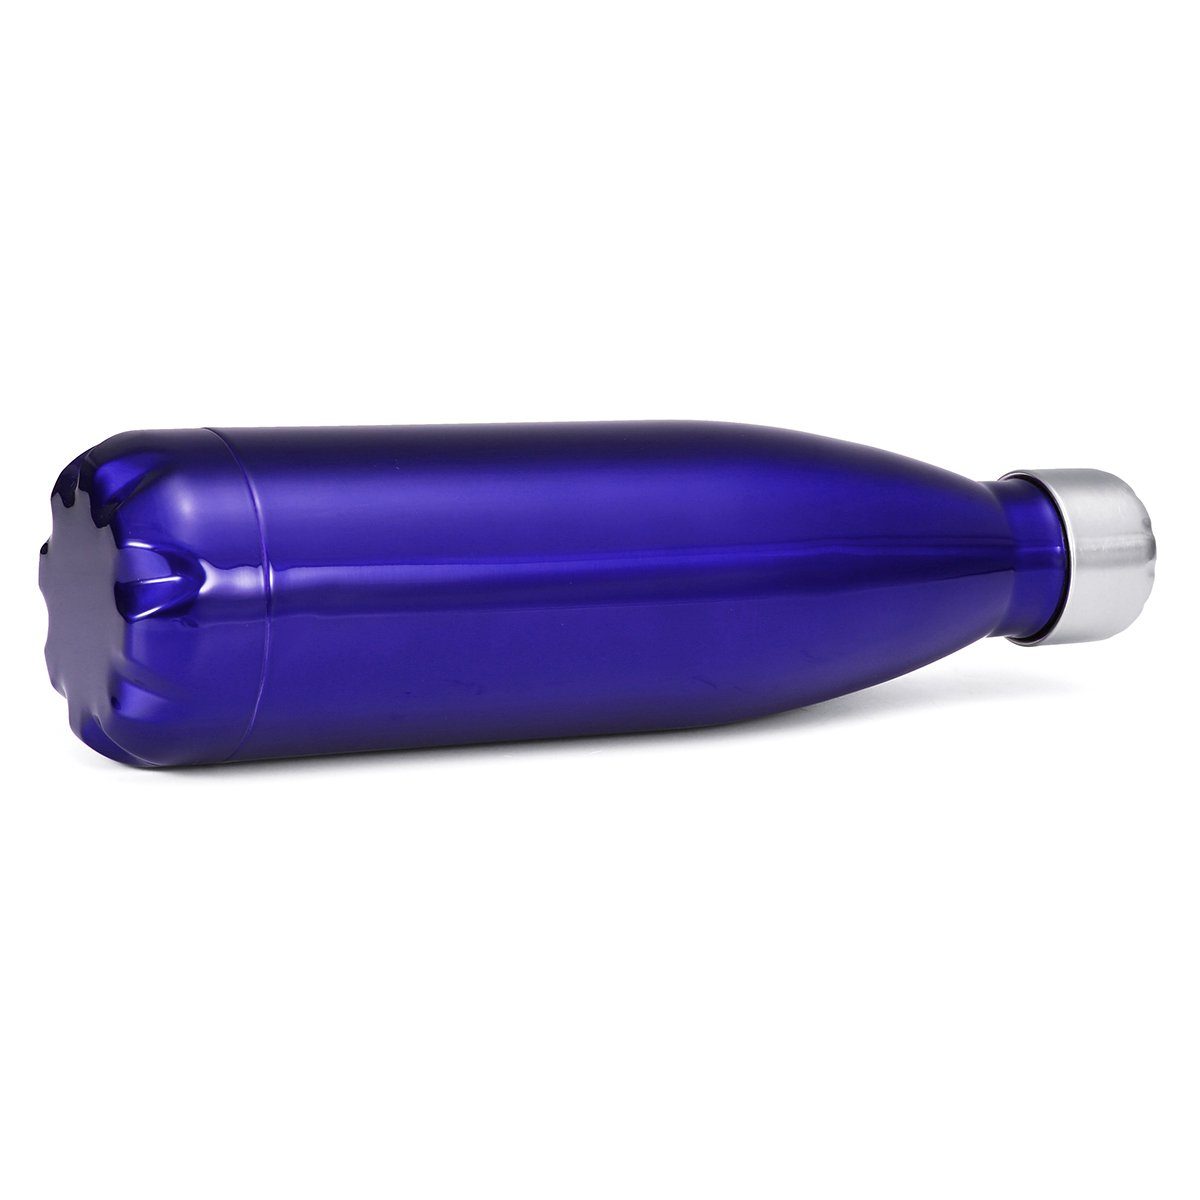 Insma Thermoflasche mit Trinkflasche, 500ml und auslaufsicherem Deckel Dunkelblau Isolierflasche Bürste doppelwandige